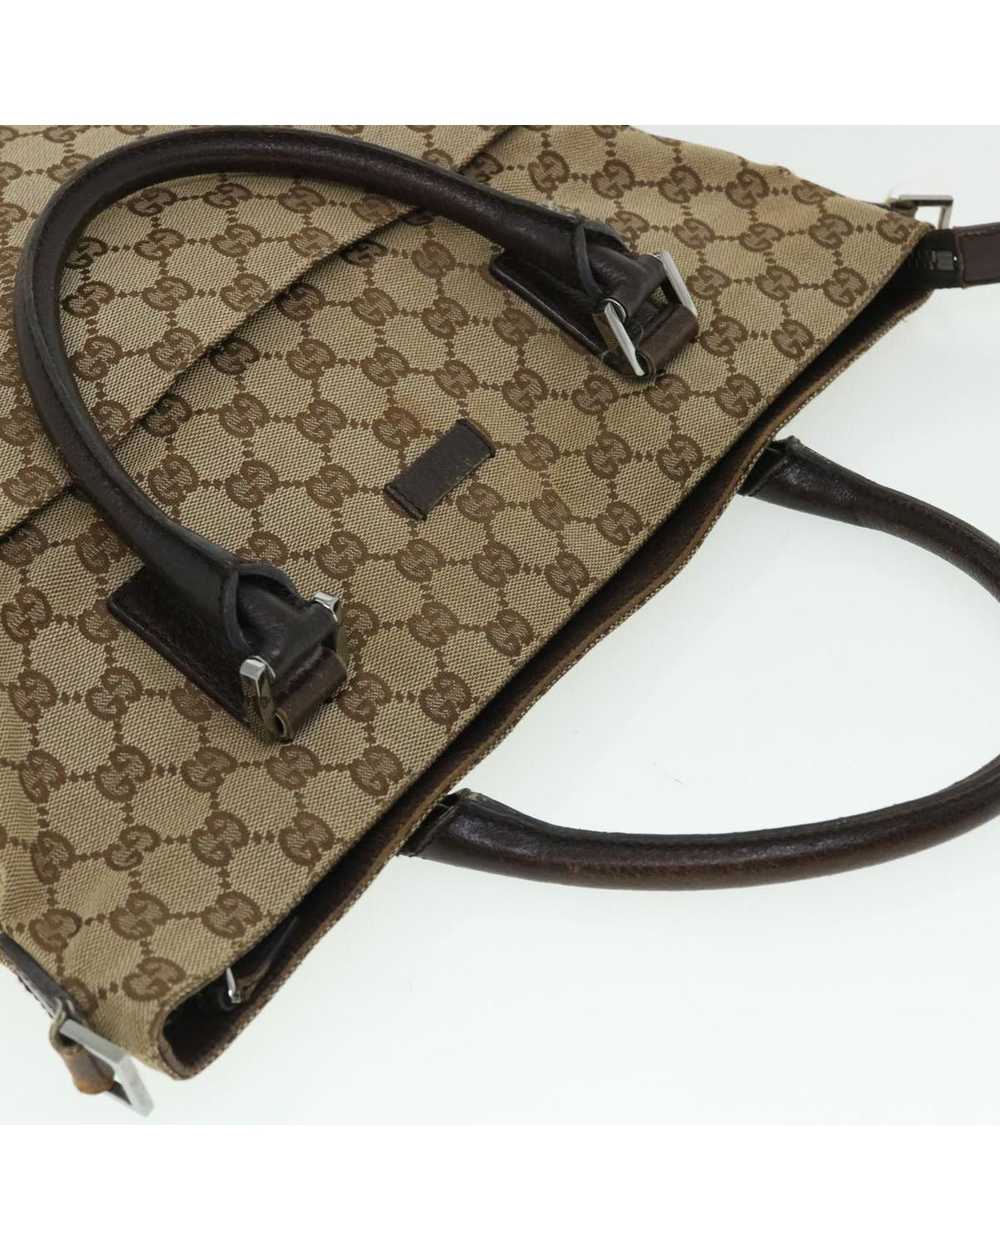 Gucci Beige Canvas Shoulder Bag with GG Design - image 6